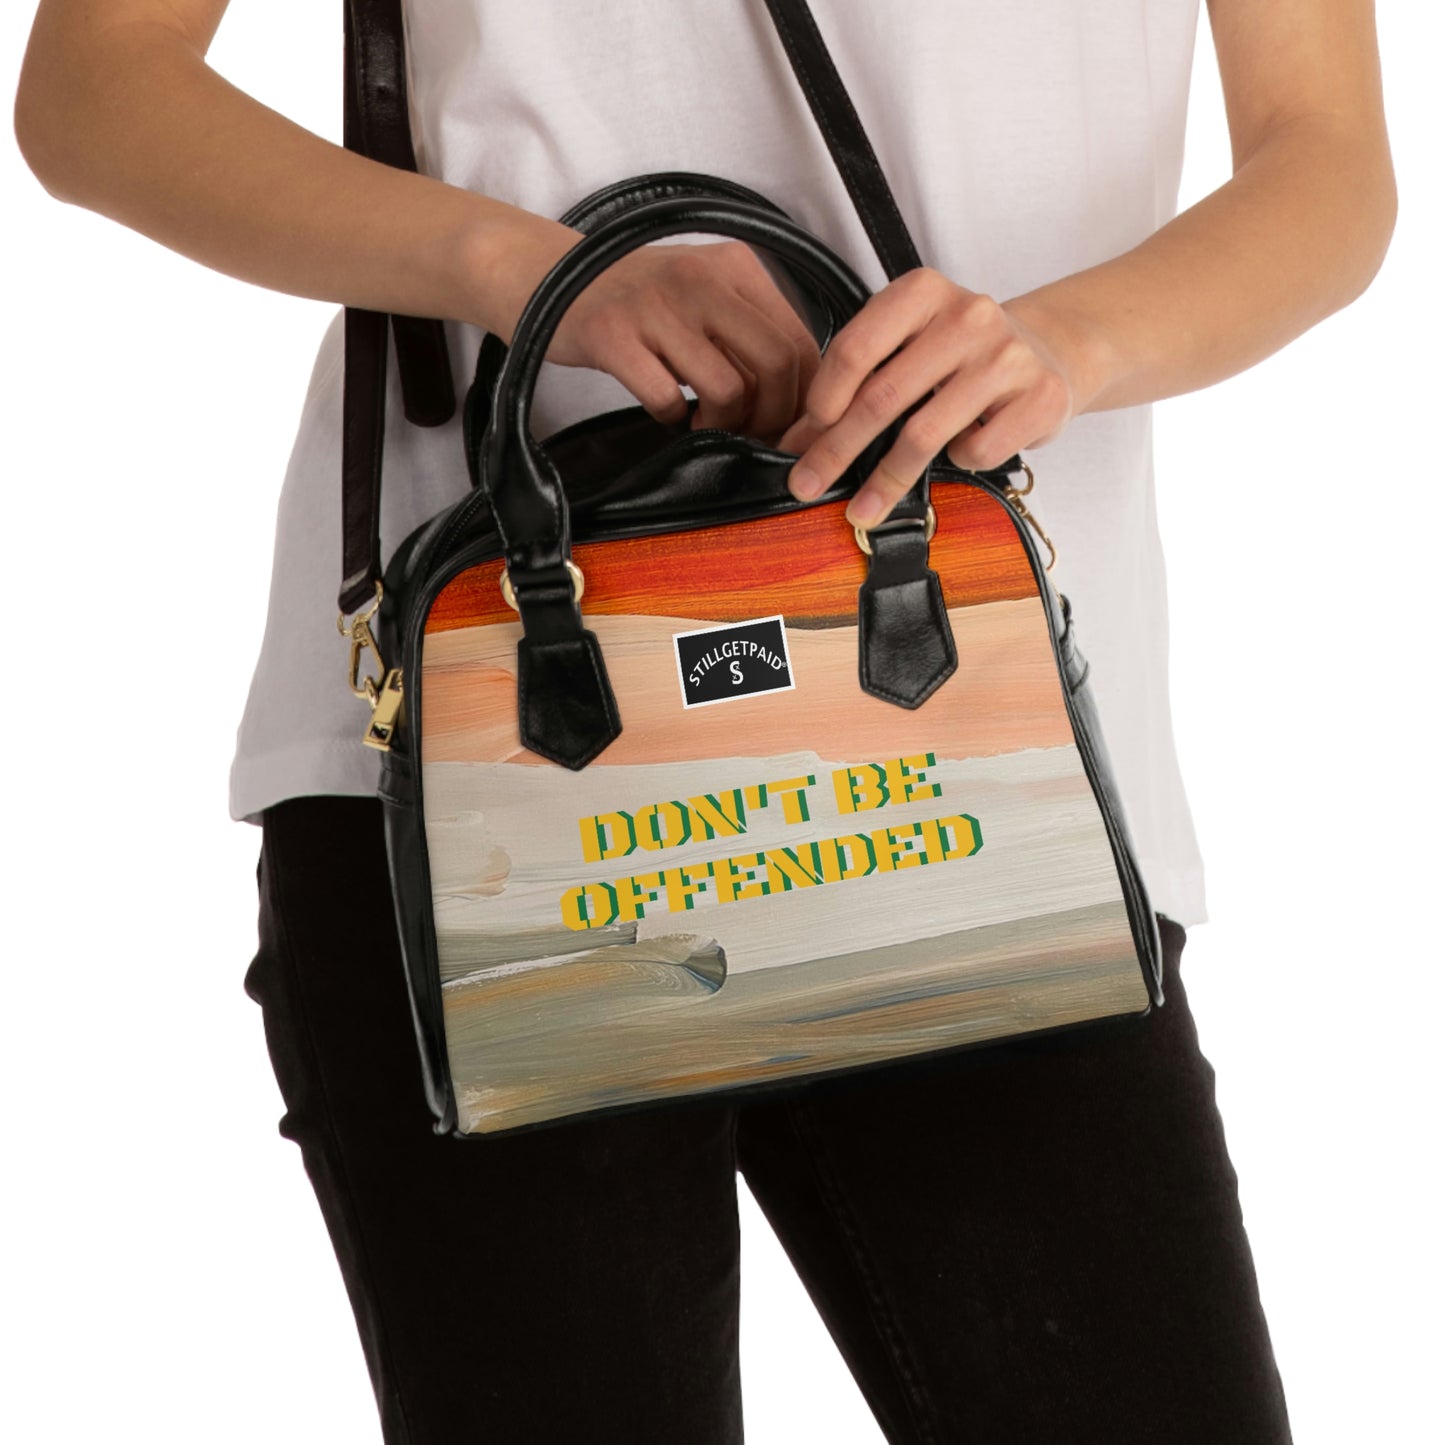 STILLGETPAID® APPAREL Shoulder Handbag